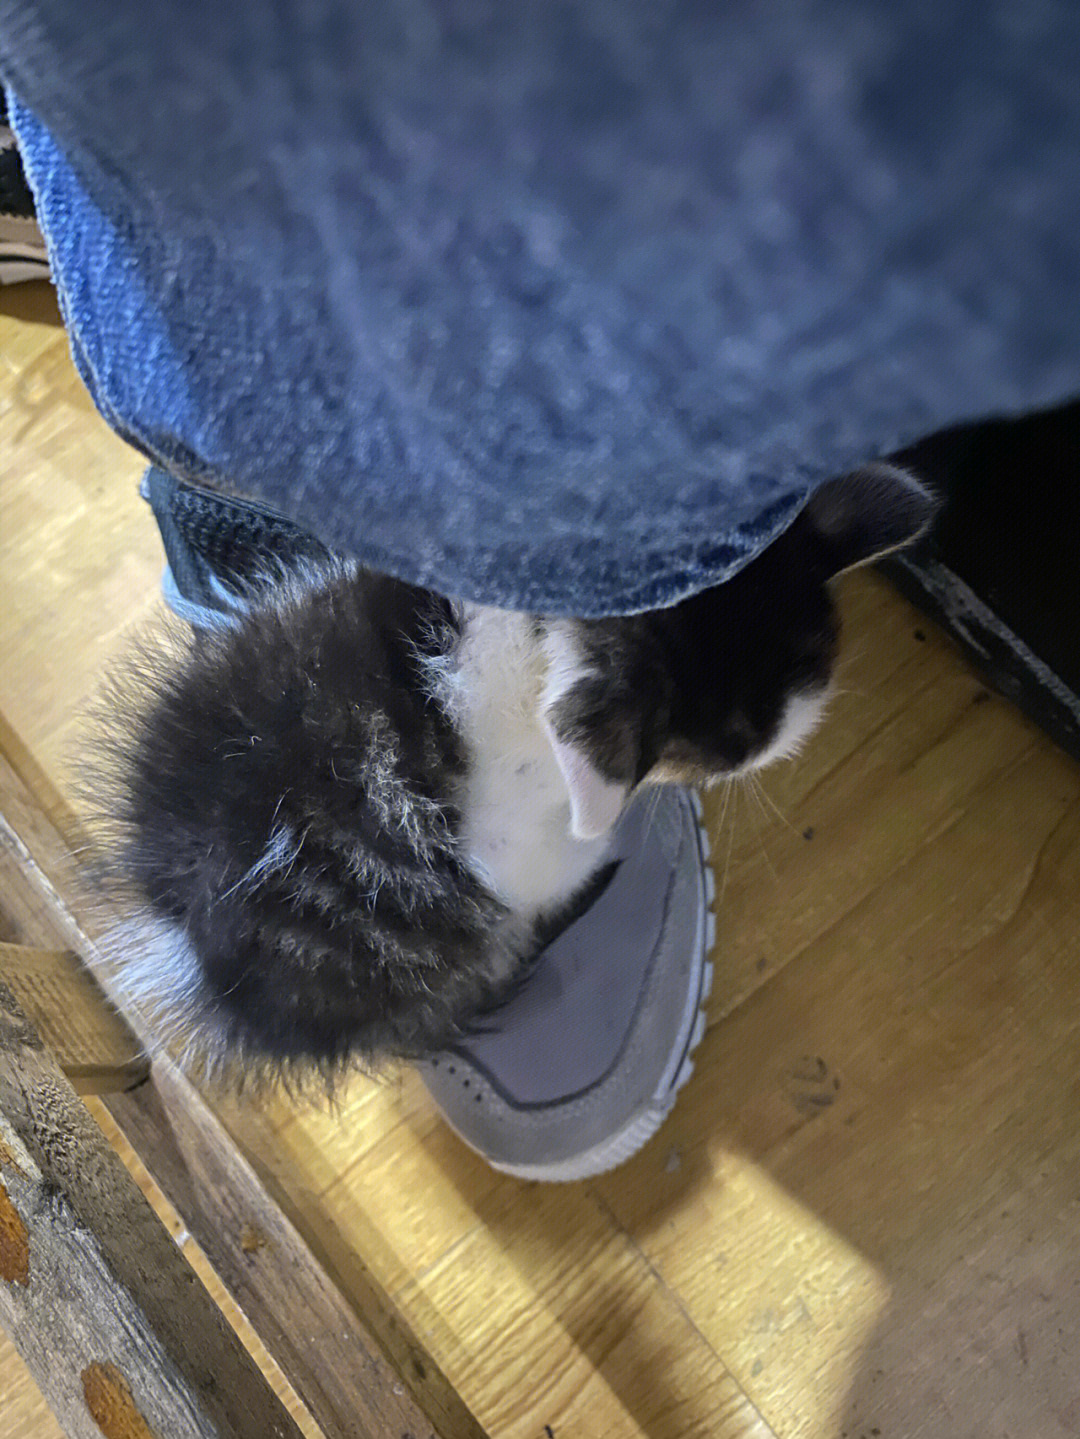 捡到一只小猫咪,躺在我的鞋子上面休息,也太可爱了